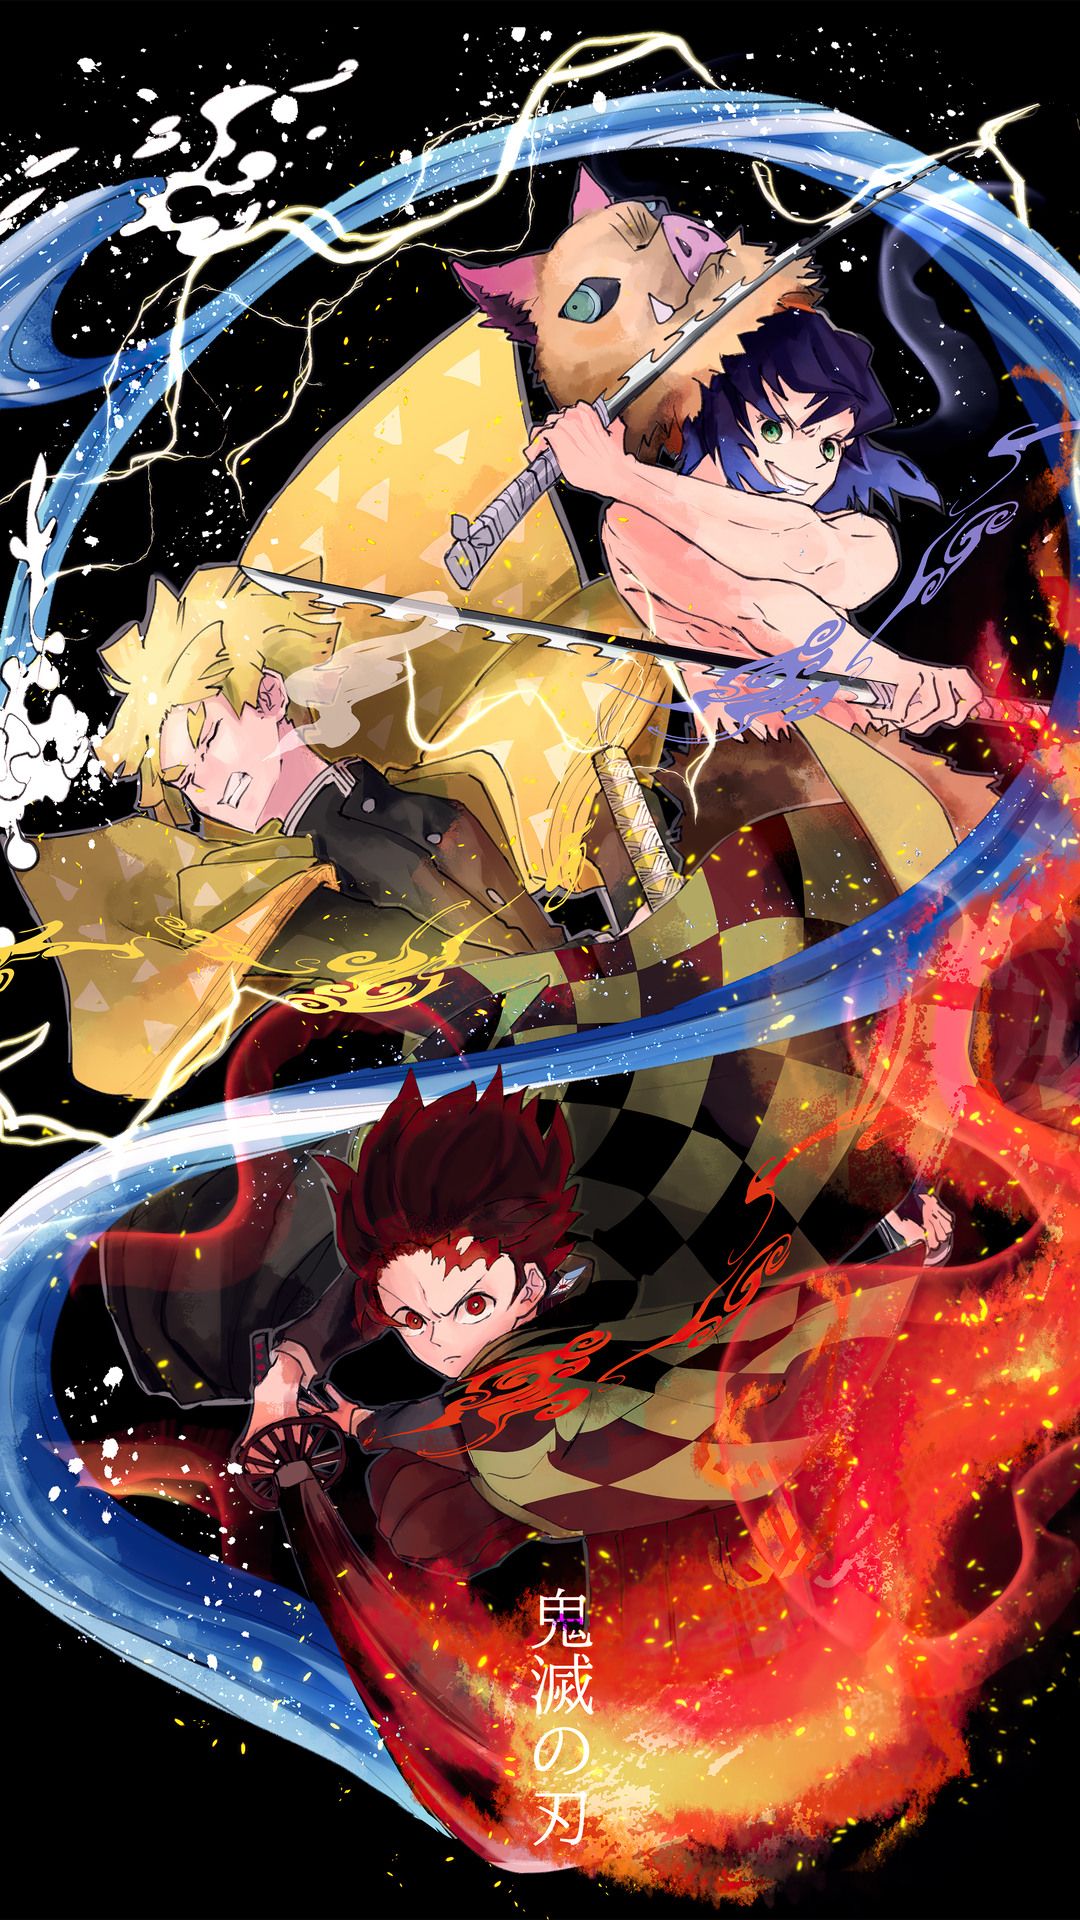 100+] Demon Slayer Anime Wallpapers